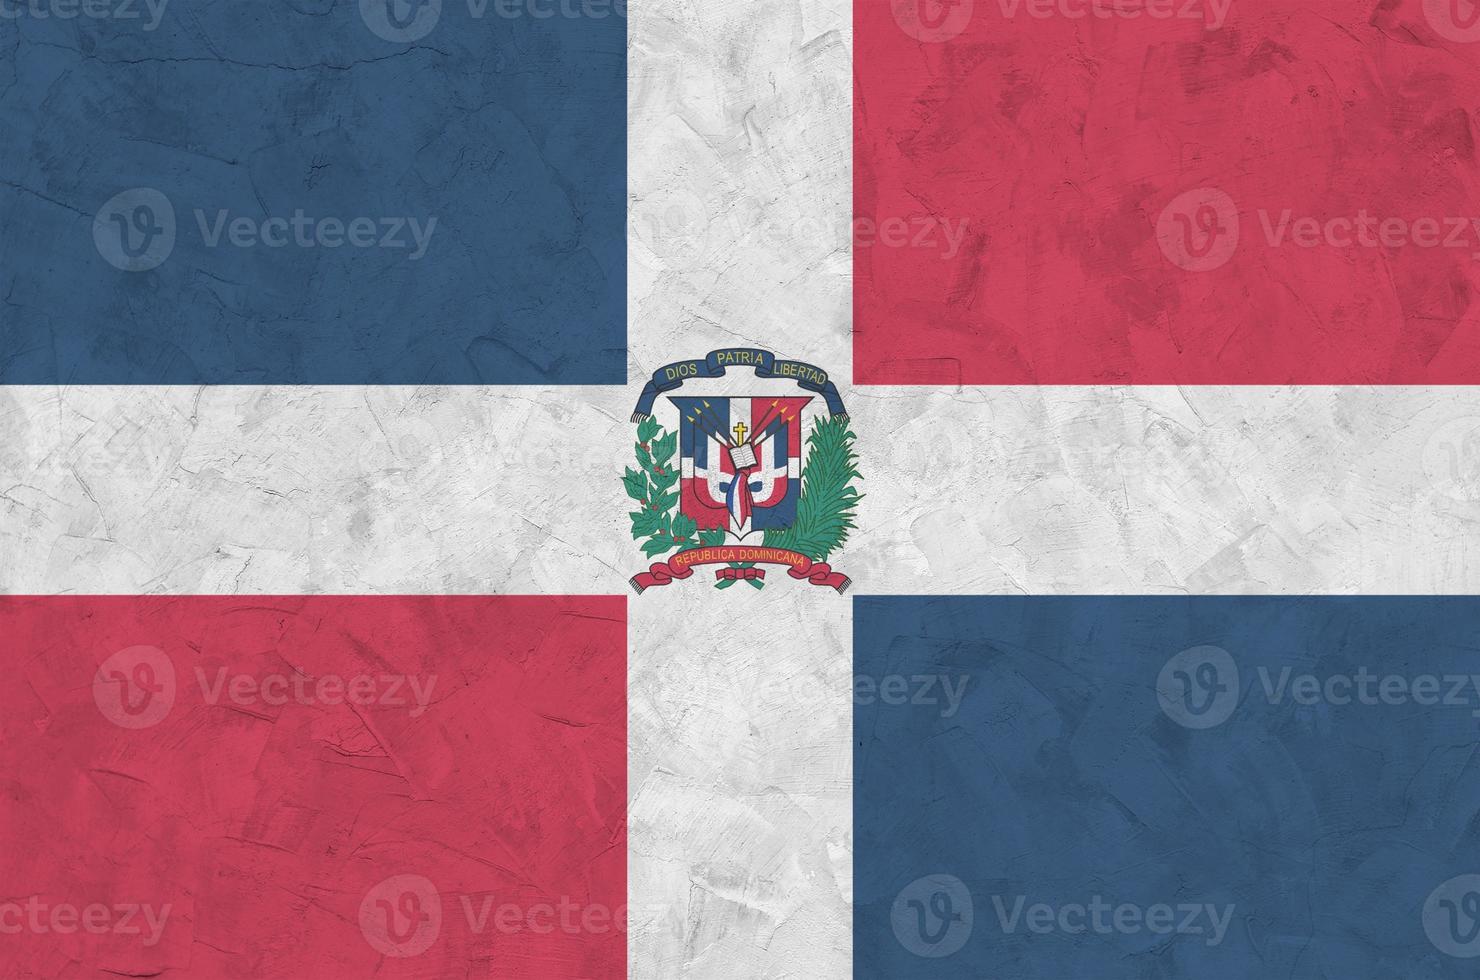 Dominikanska republik flagga avbildad i ljus måla färger på gammal lättnad putsning vägg. texturerad baner på grov bakgrund foto